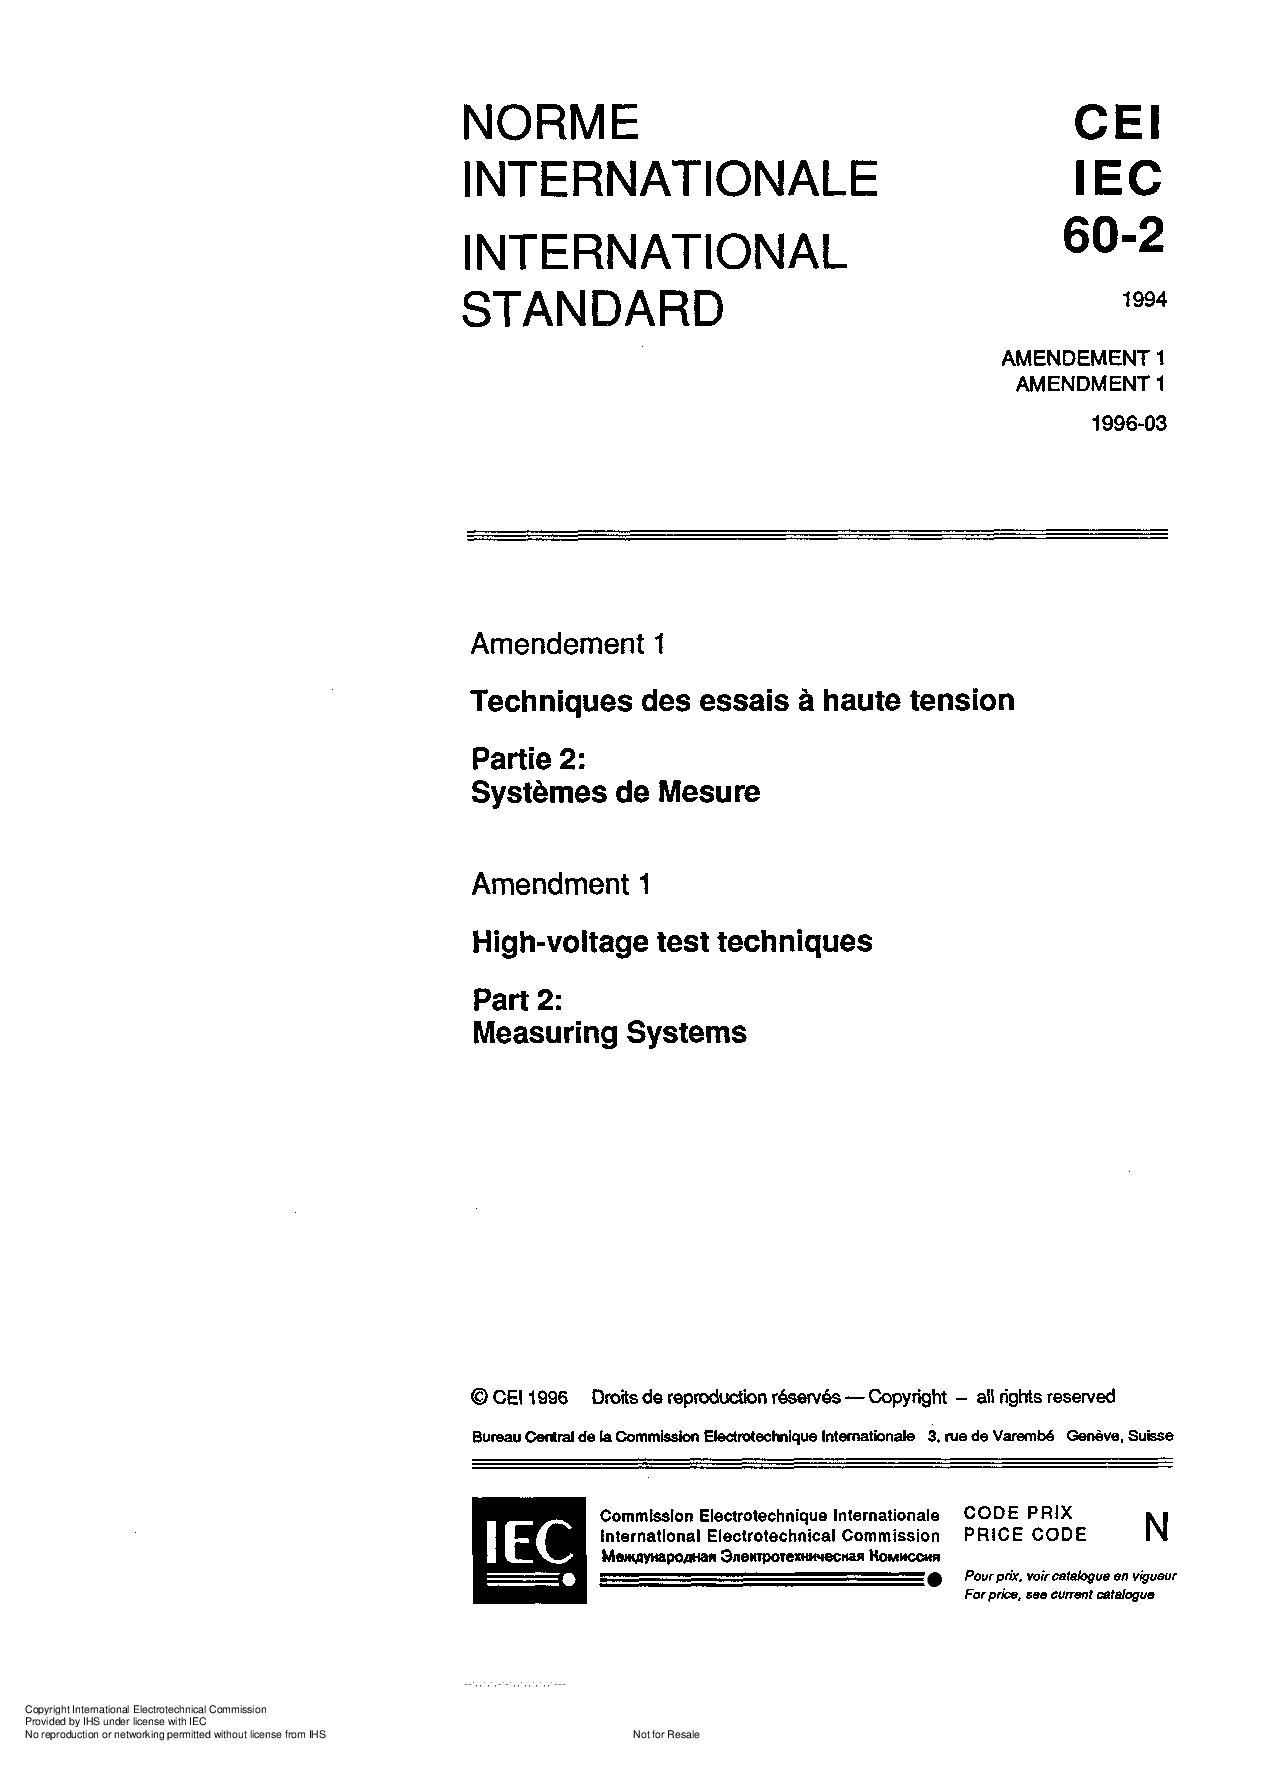 IEC 60060-2:1994